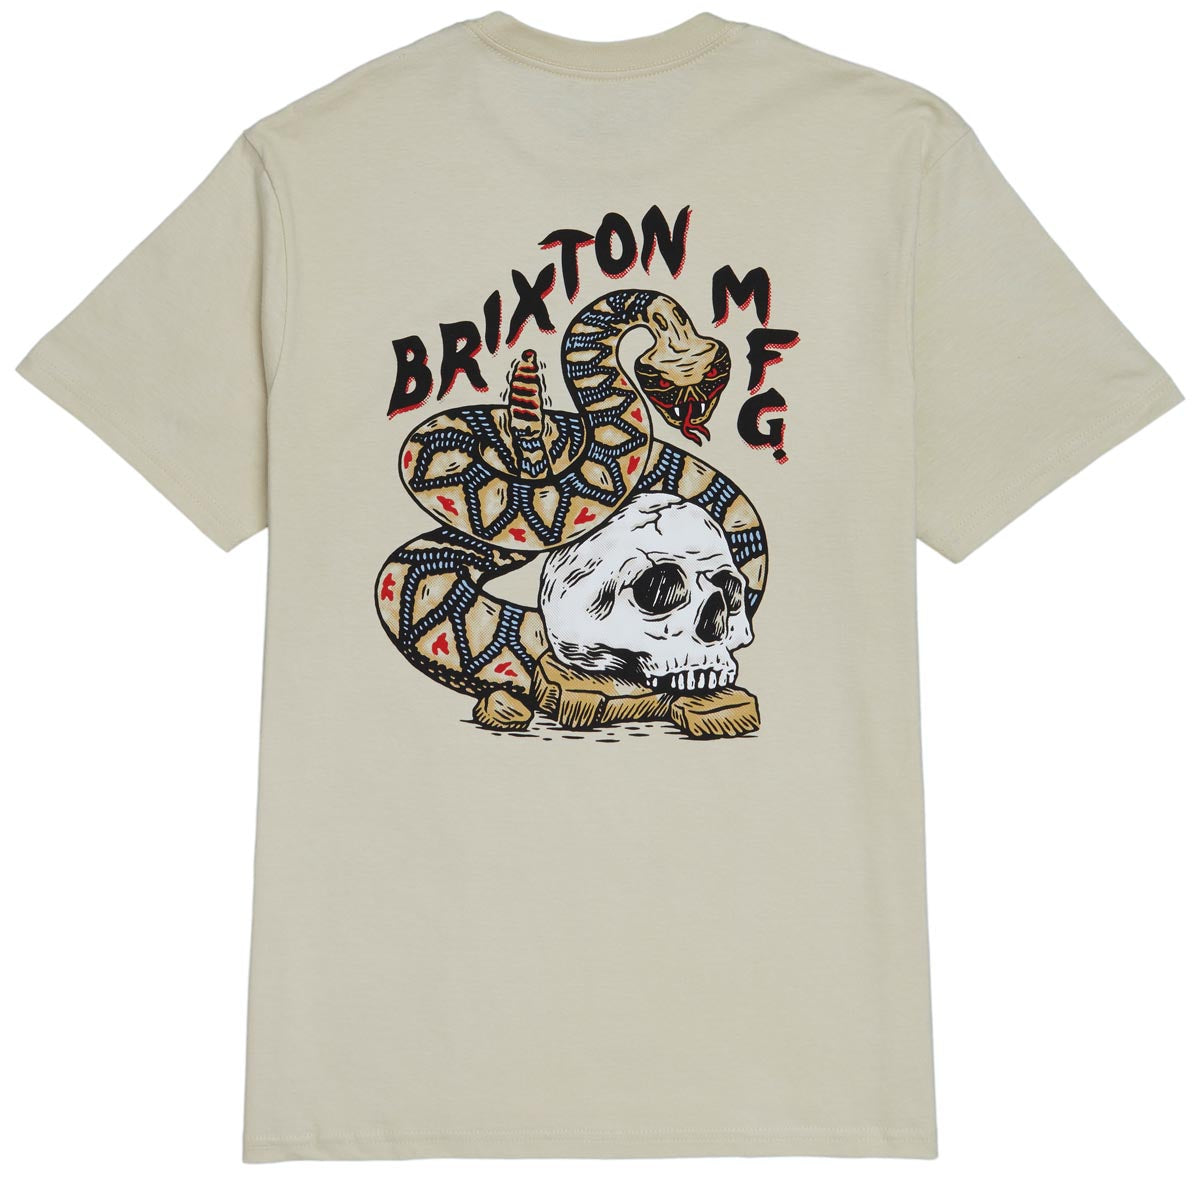 Brixton Trailmoor T-Shirt - Cream image 1